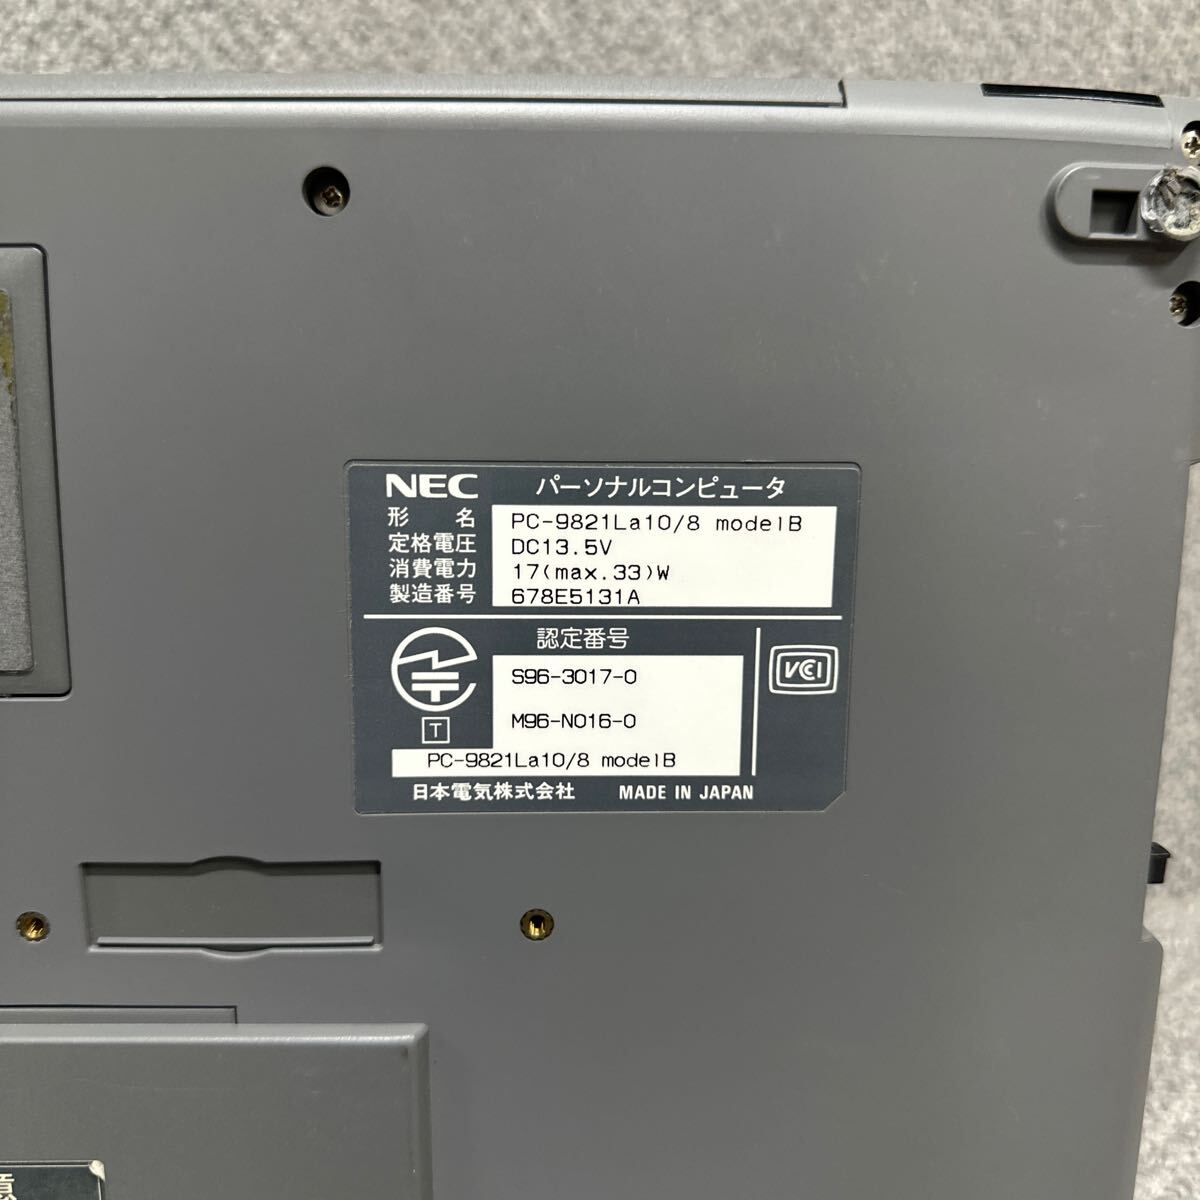 PCN98-1636 激安 PC98 ノートブック NEC Aile PC-9821La10/8 modelB 起動音確認済み ジャンク 同梱可能の画像8